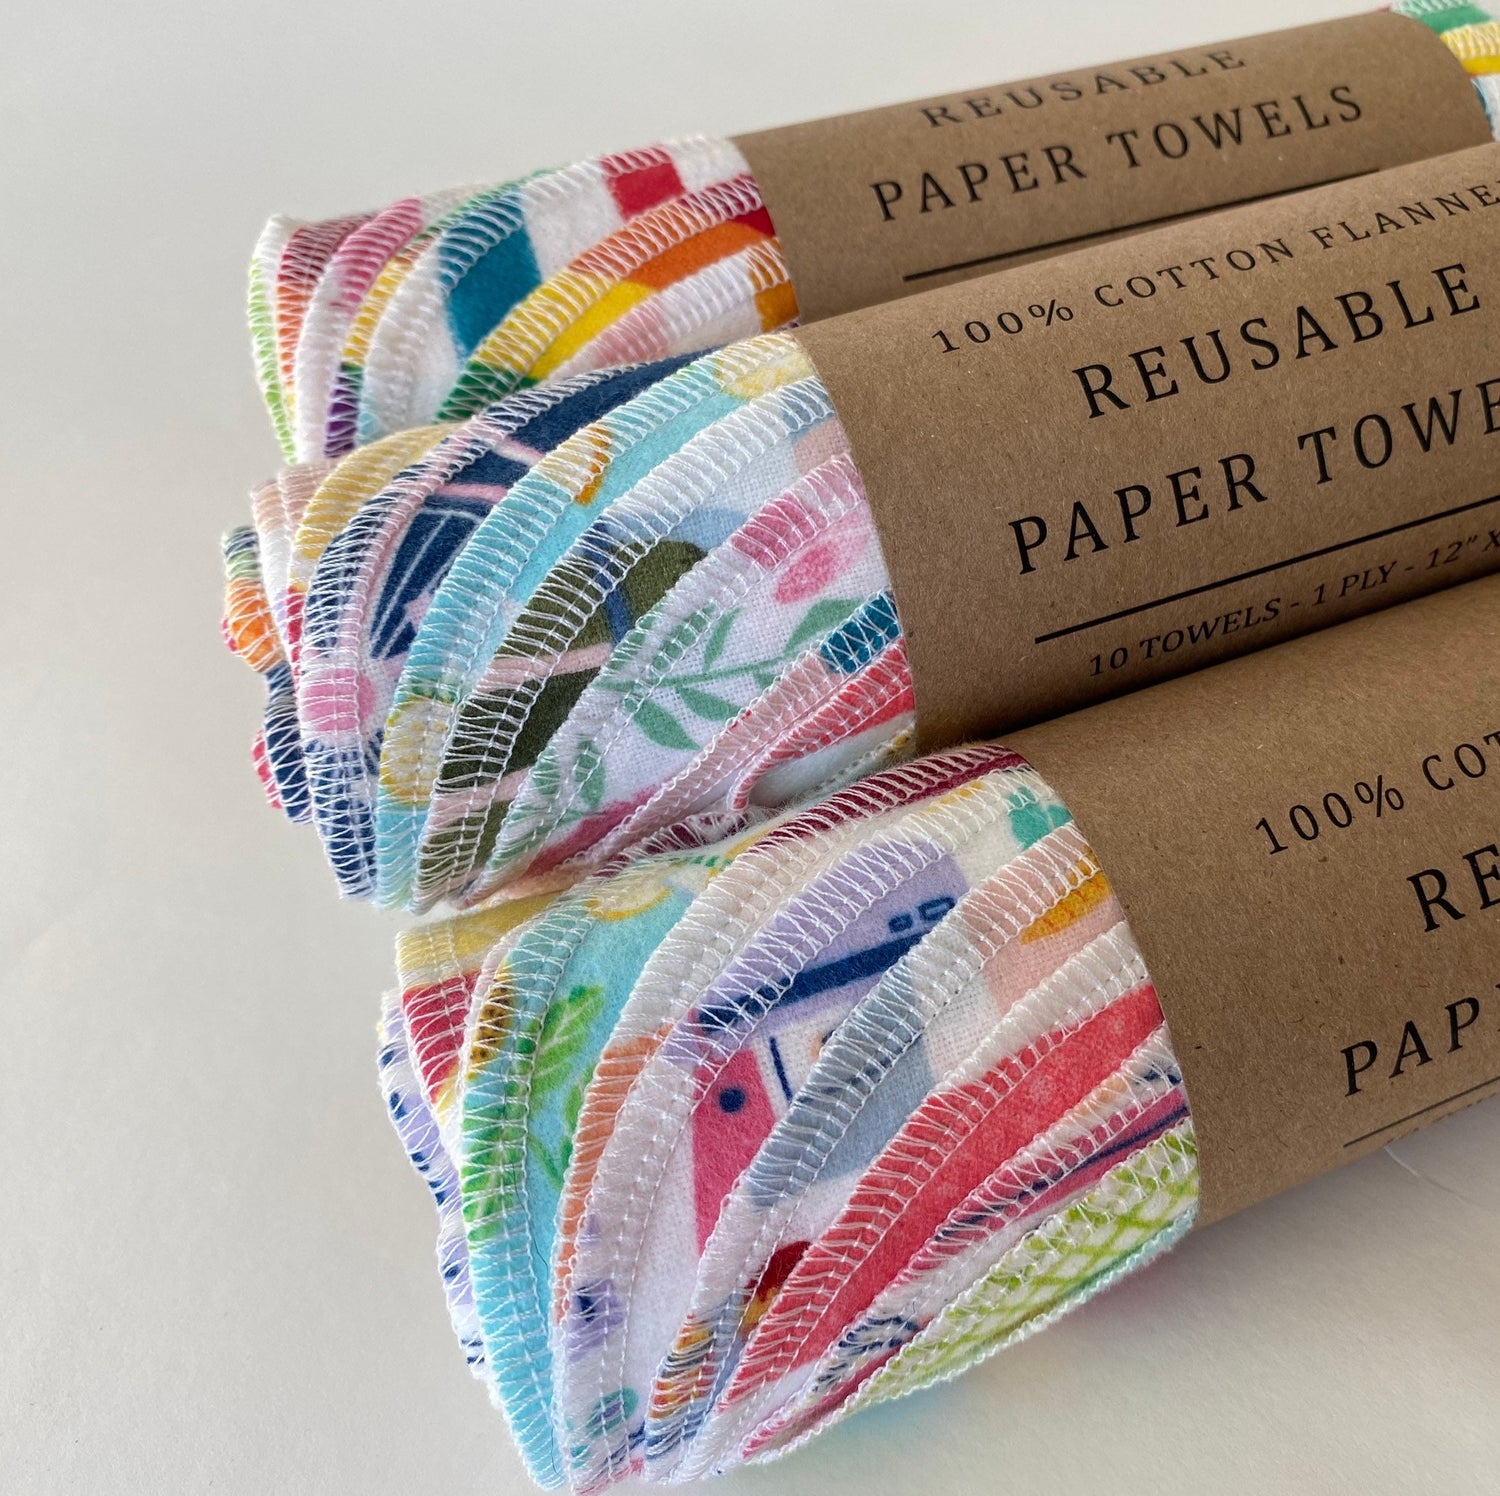 Reusable Paper Towels, 100% Cotton Flannel, 10 Pack